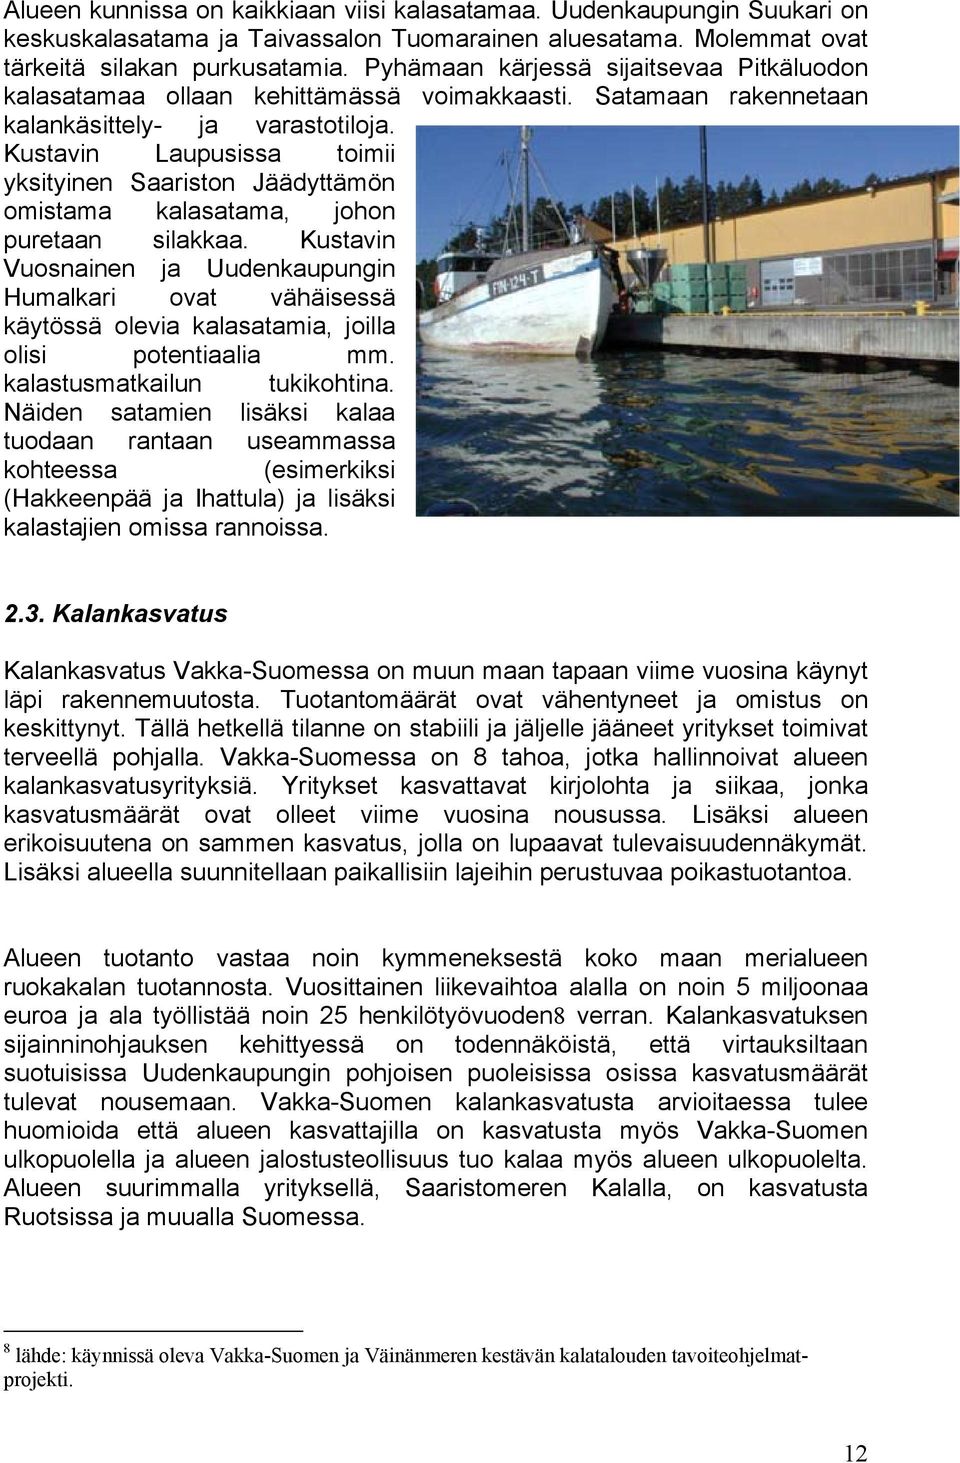 Kustavin Laupusissa toimii yksityinen Saariston Jäädyttämön omistama kalasatama, johon puretaan silakkaa.